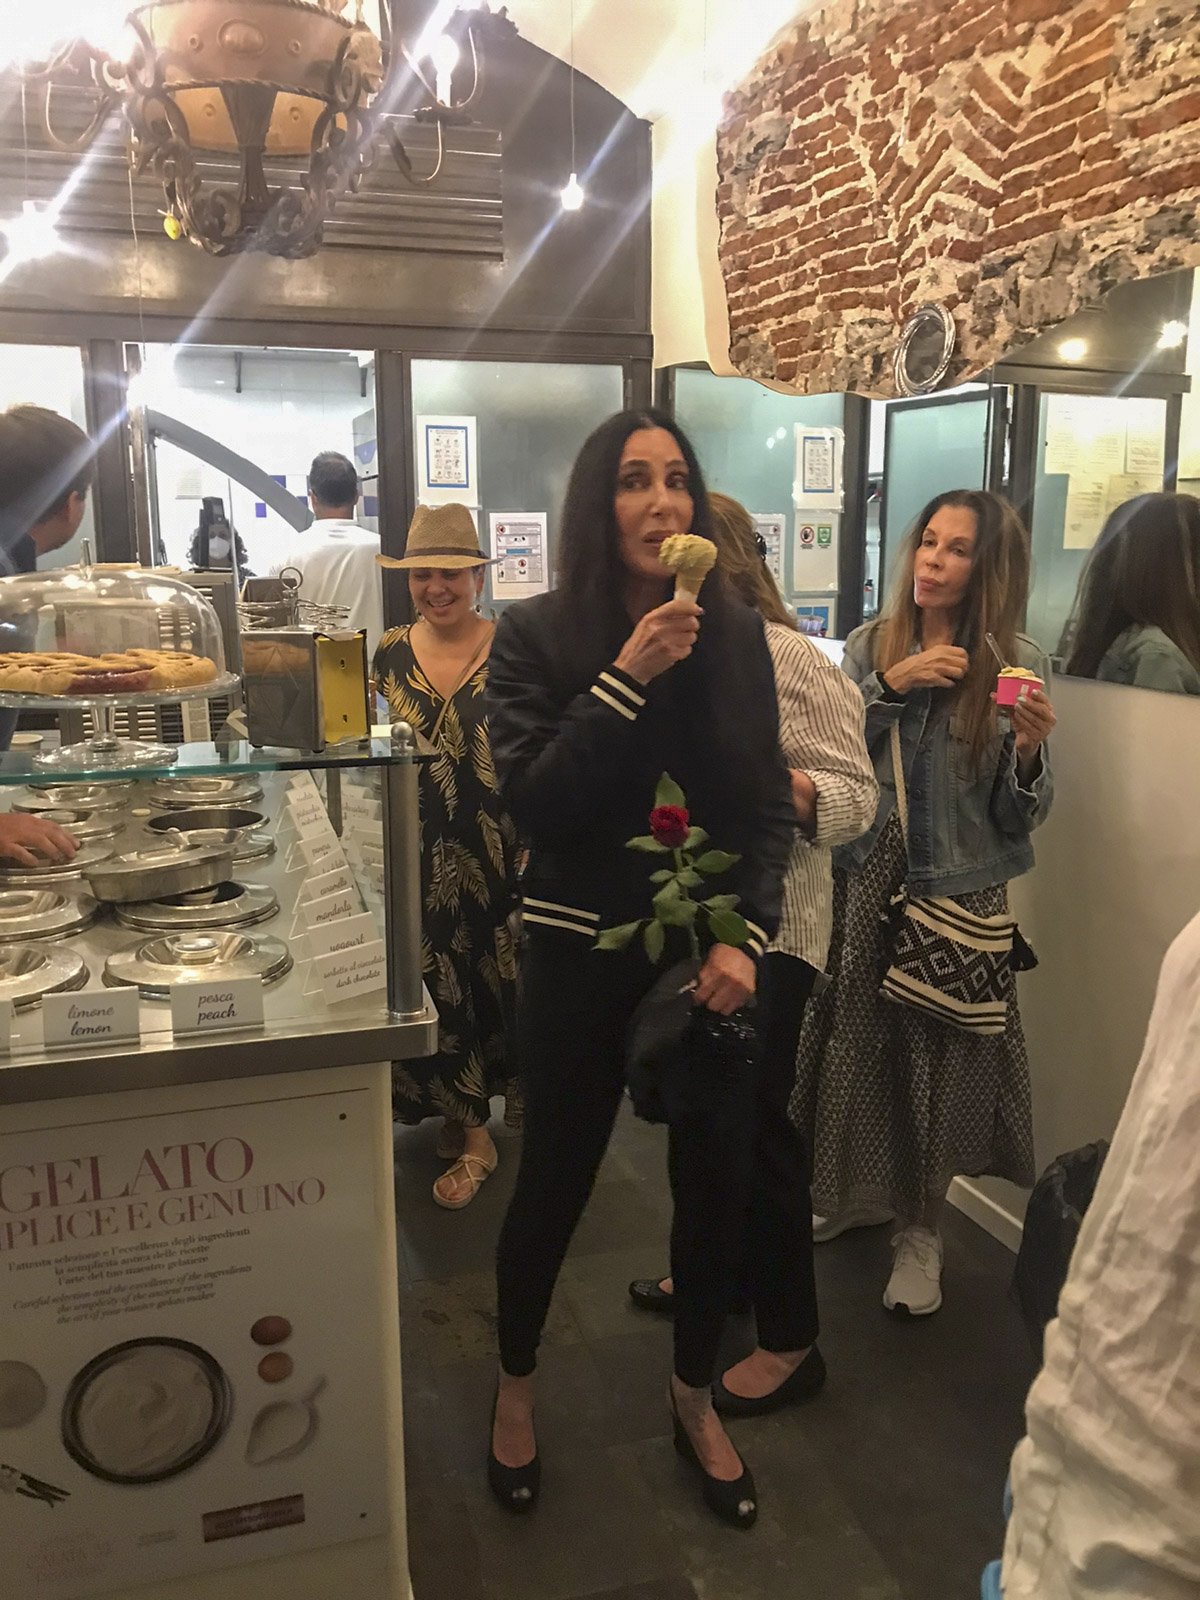 Cher disfrutó de una noche de verano en Portofino, Italia, y se acercó hasta una heladería para tomar un helado. La artista lució un look total black y llevó una rosa en su mano